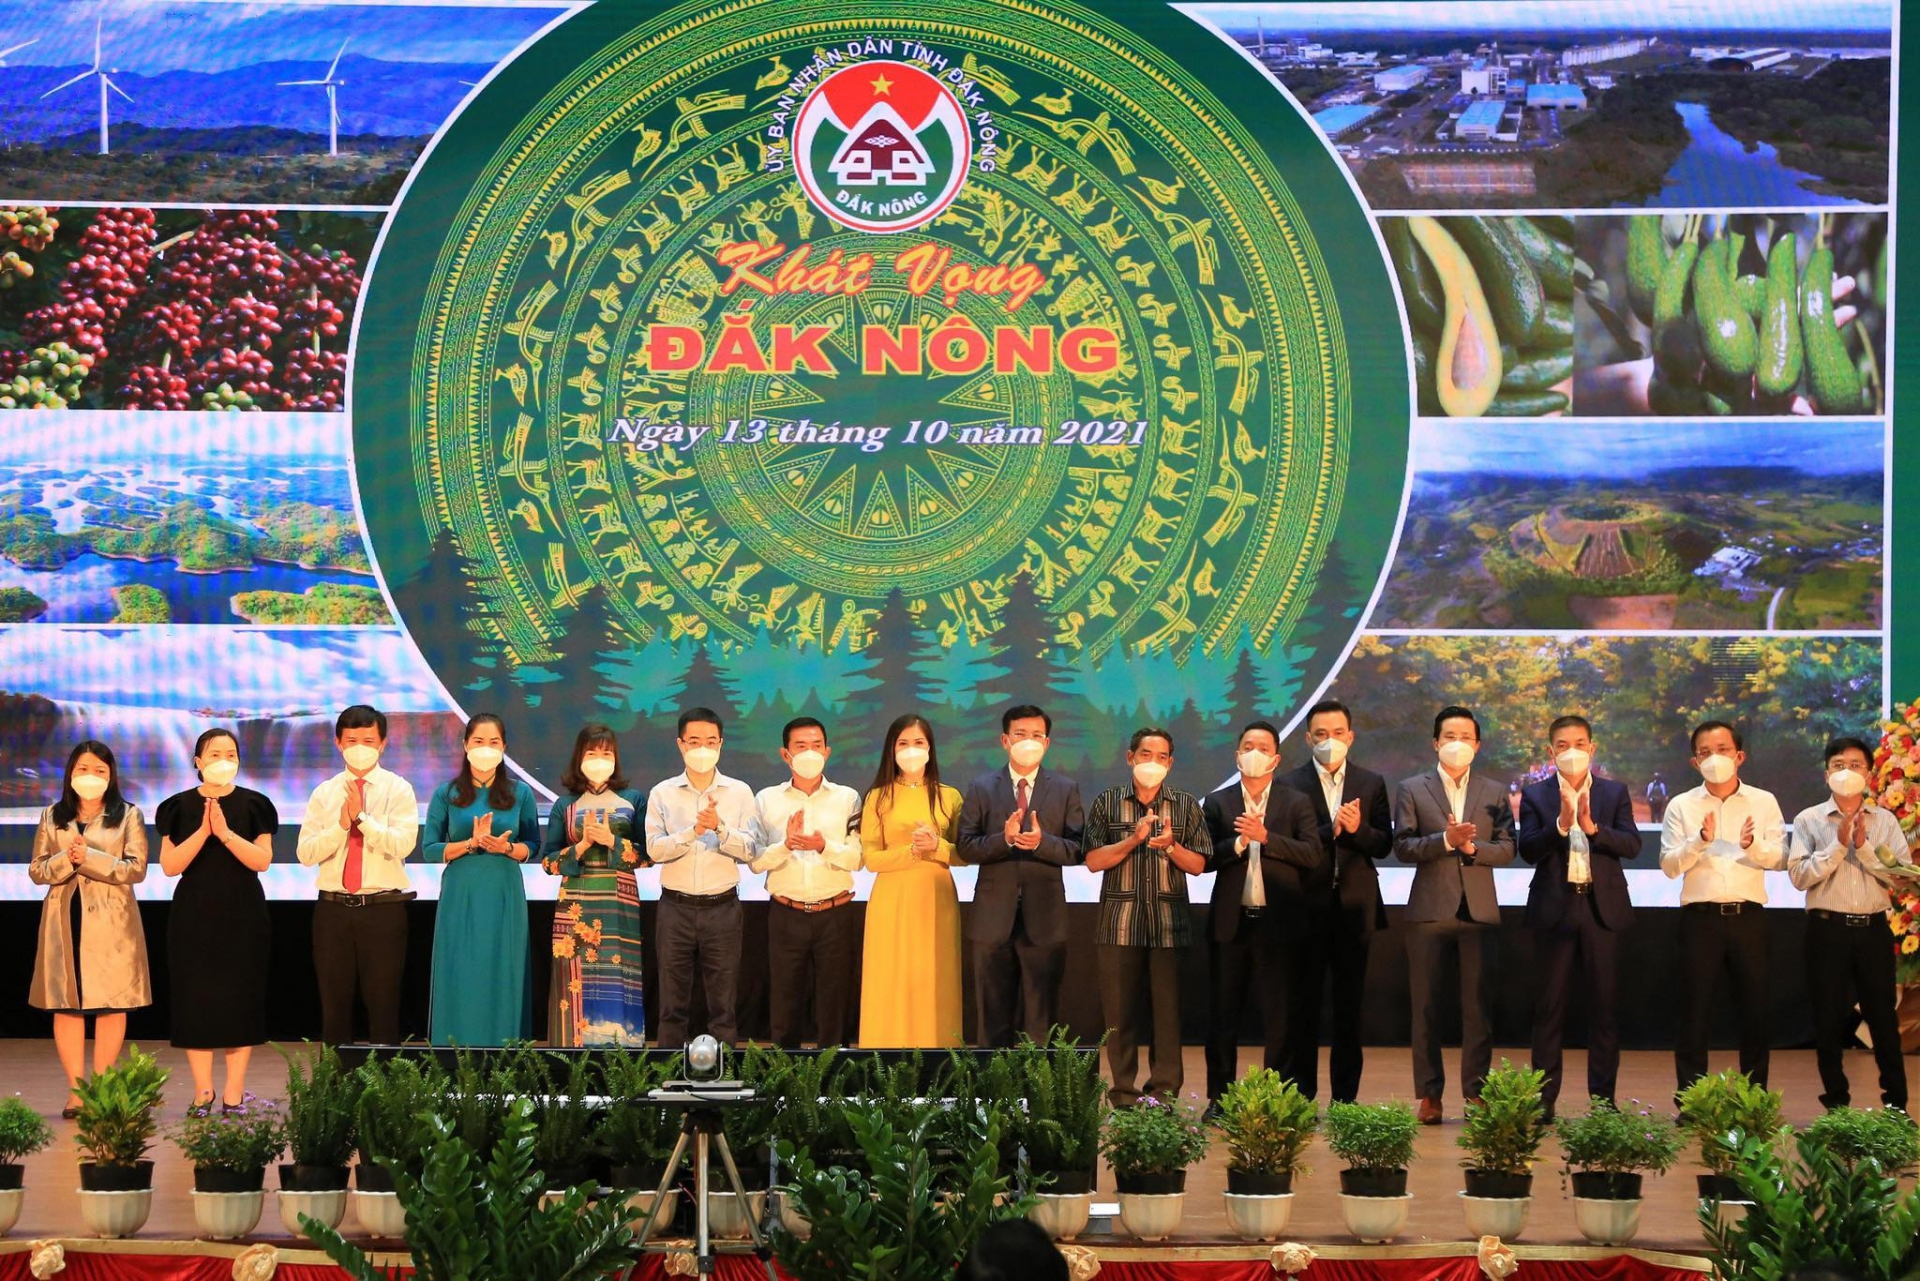 Chủ tịch tỉnh Đắk Nông: Tạo mọi điều kiện thuận lợi cho doanh nghiệp đến đầu tư